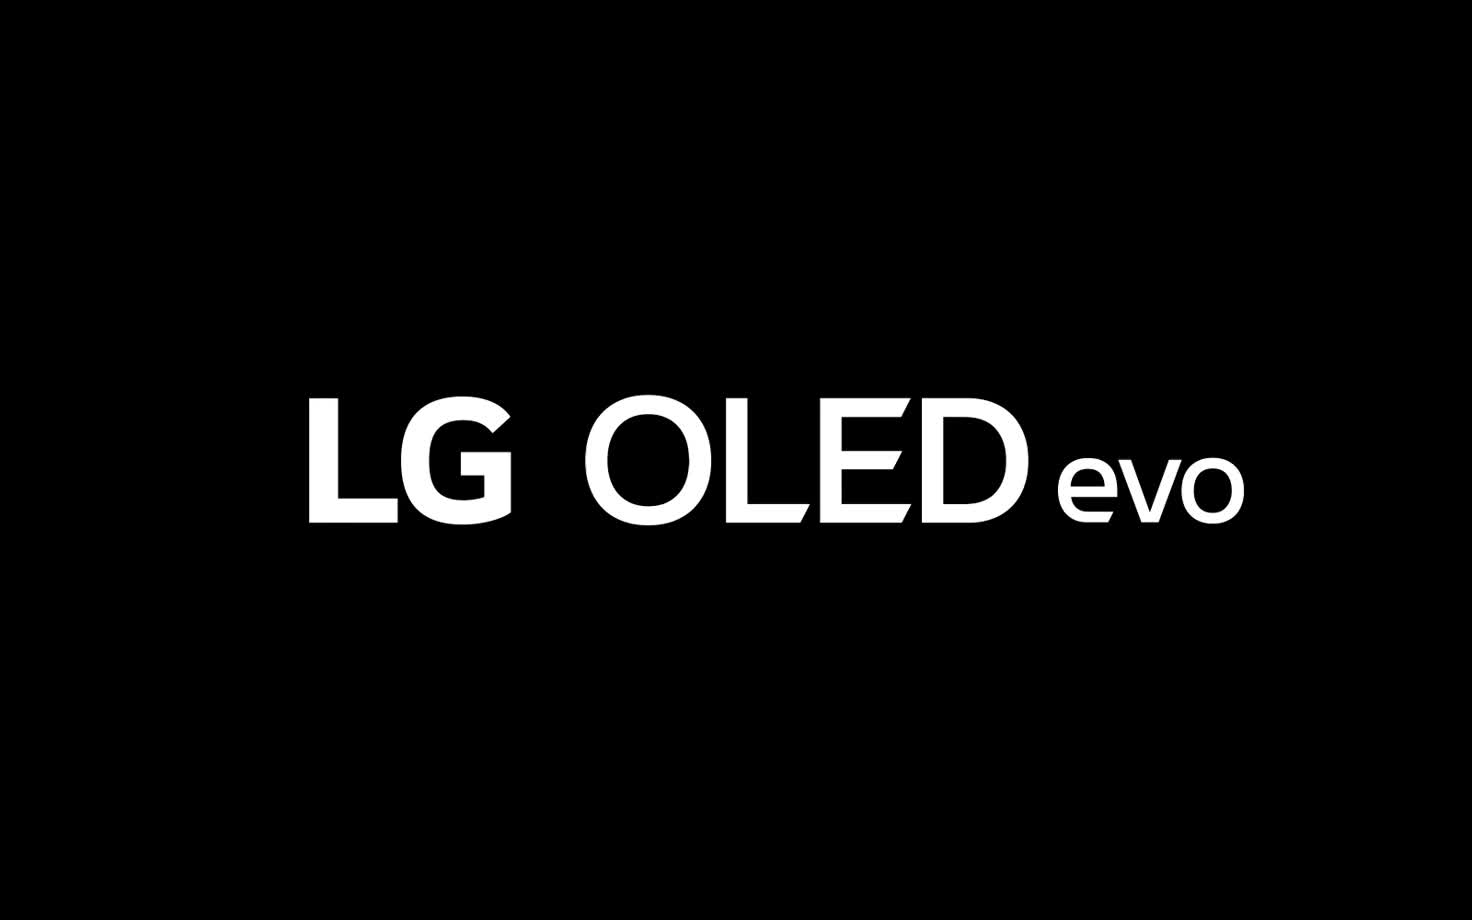 Відео починається з білого напису LG OLED evo на чорному тлі. Слова збільшуються і наповнюються кольором. Потім сцена змінюється на LG OLED G3, що показує барвистий абстрактний твір мистецтва. Екран повертається вбік, відкриваючи тонкий край і настінне кріплення One Wall Design.